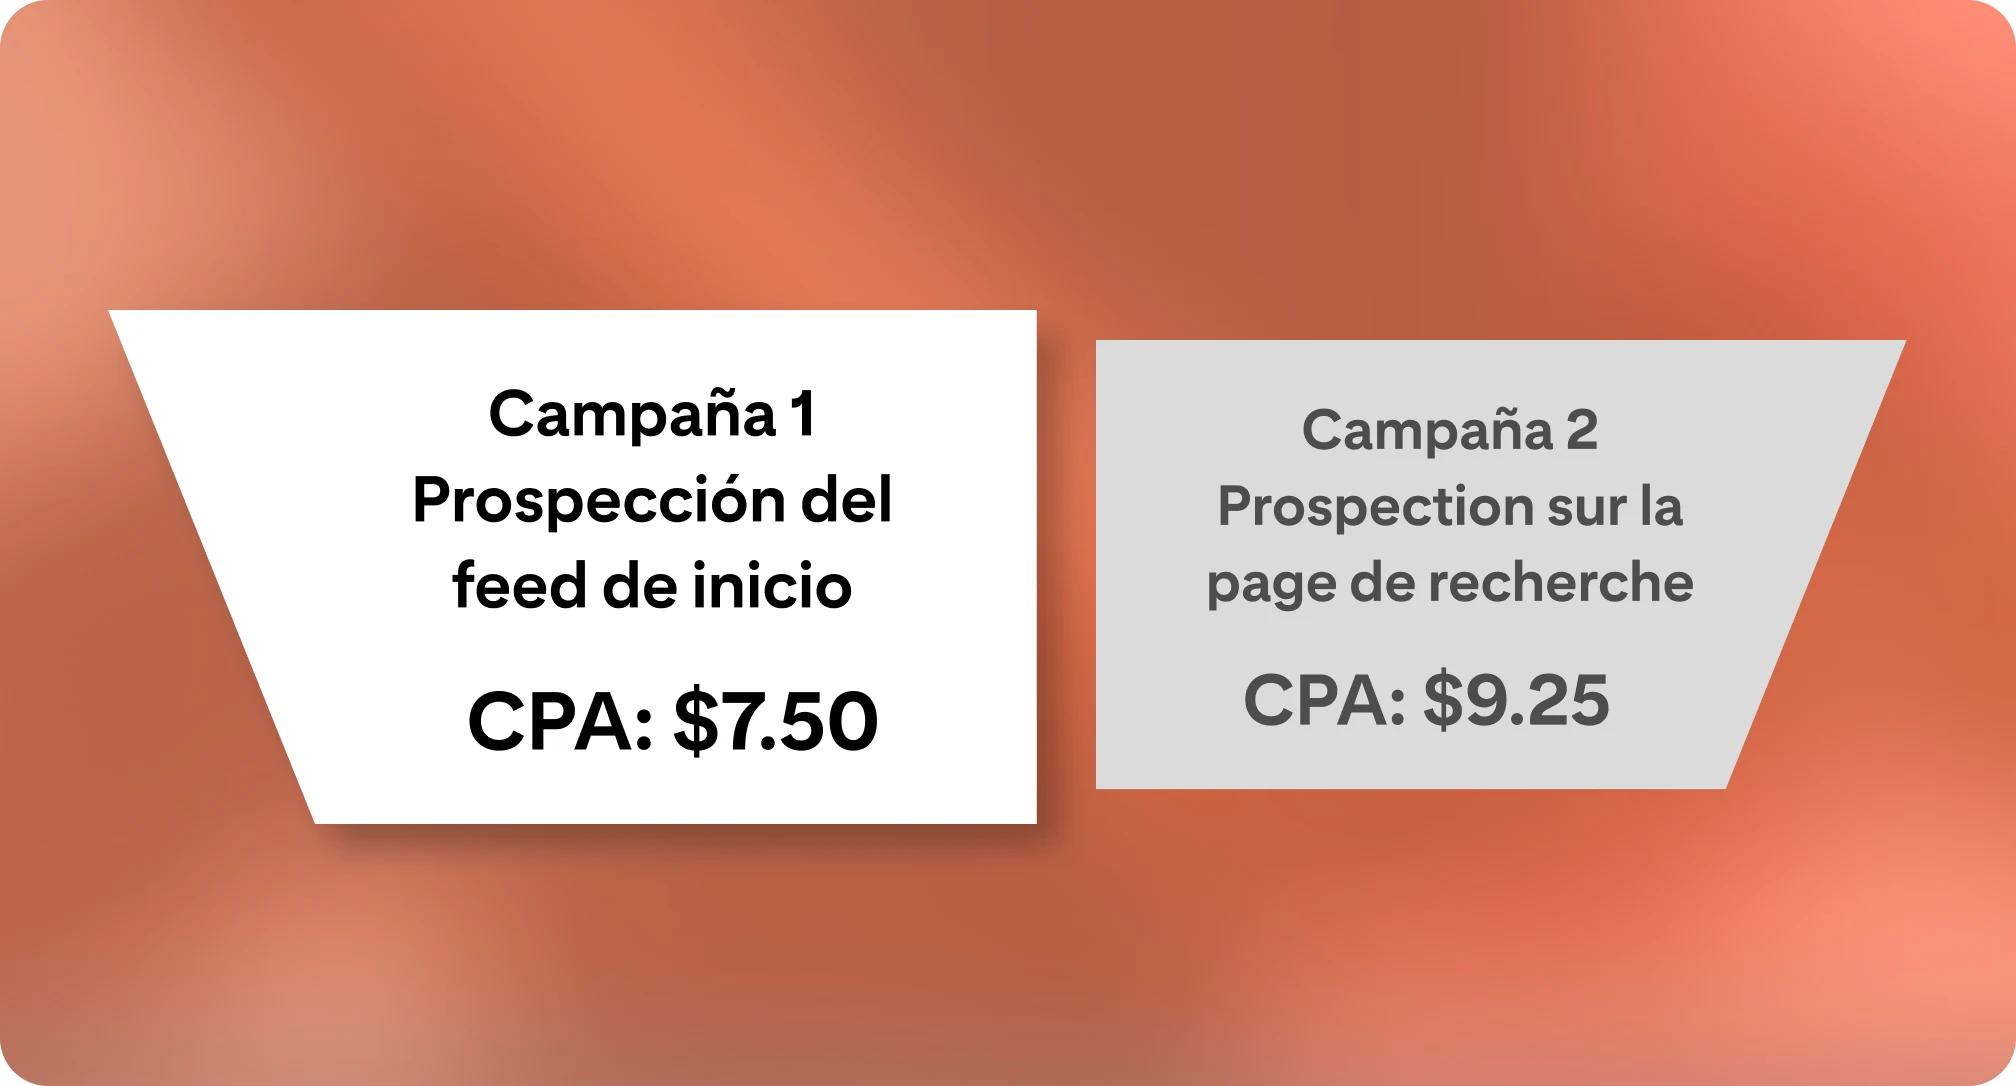 Una comparación punto por punto de dos campañas. Se destaca la campaña 1 como la ganadora debido a su menor CPA, mientras que la campaña 2 tiene un sombreado leve en el fondo, que indica una menor eficacia.